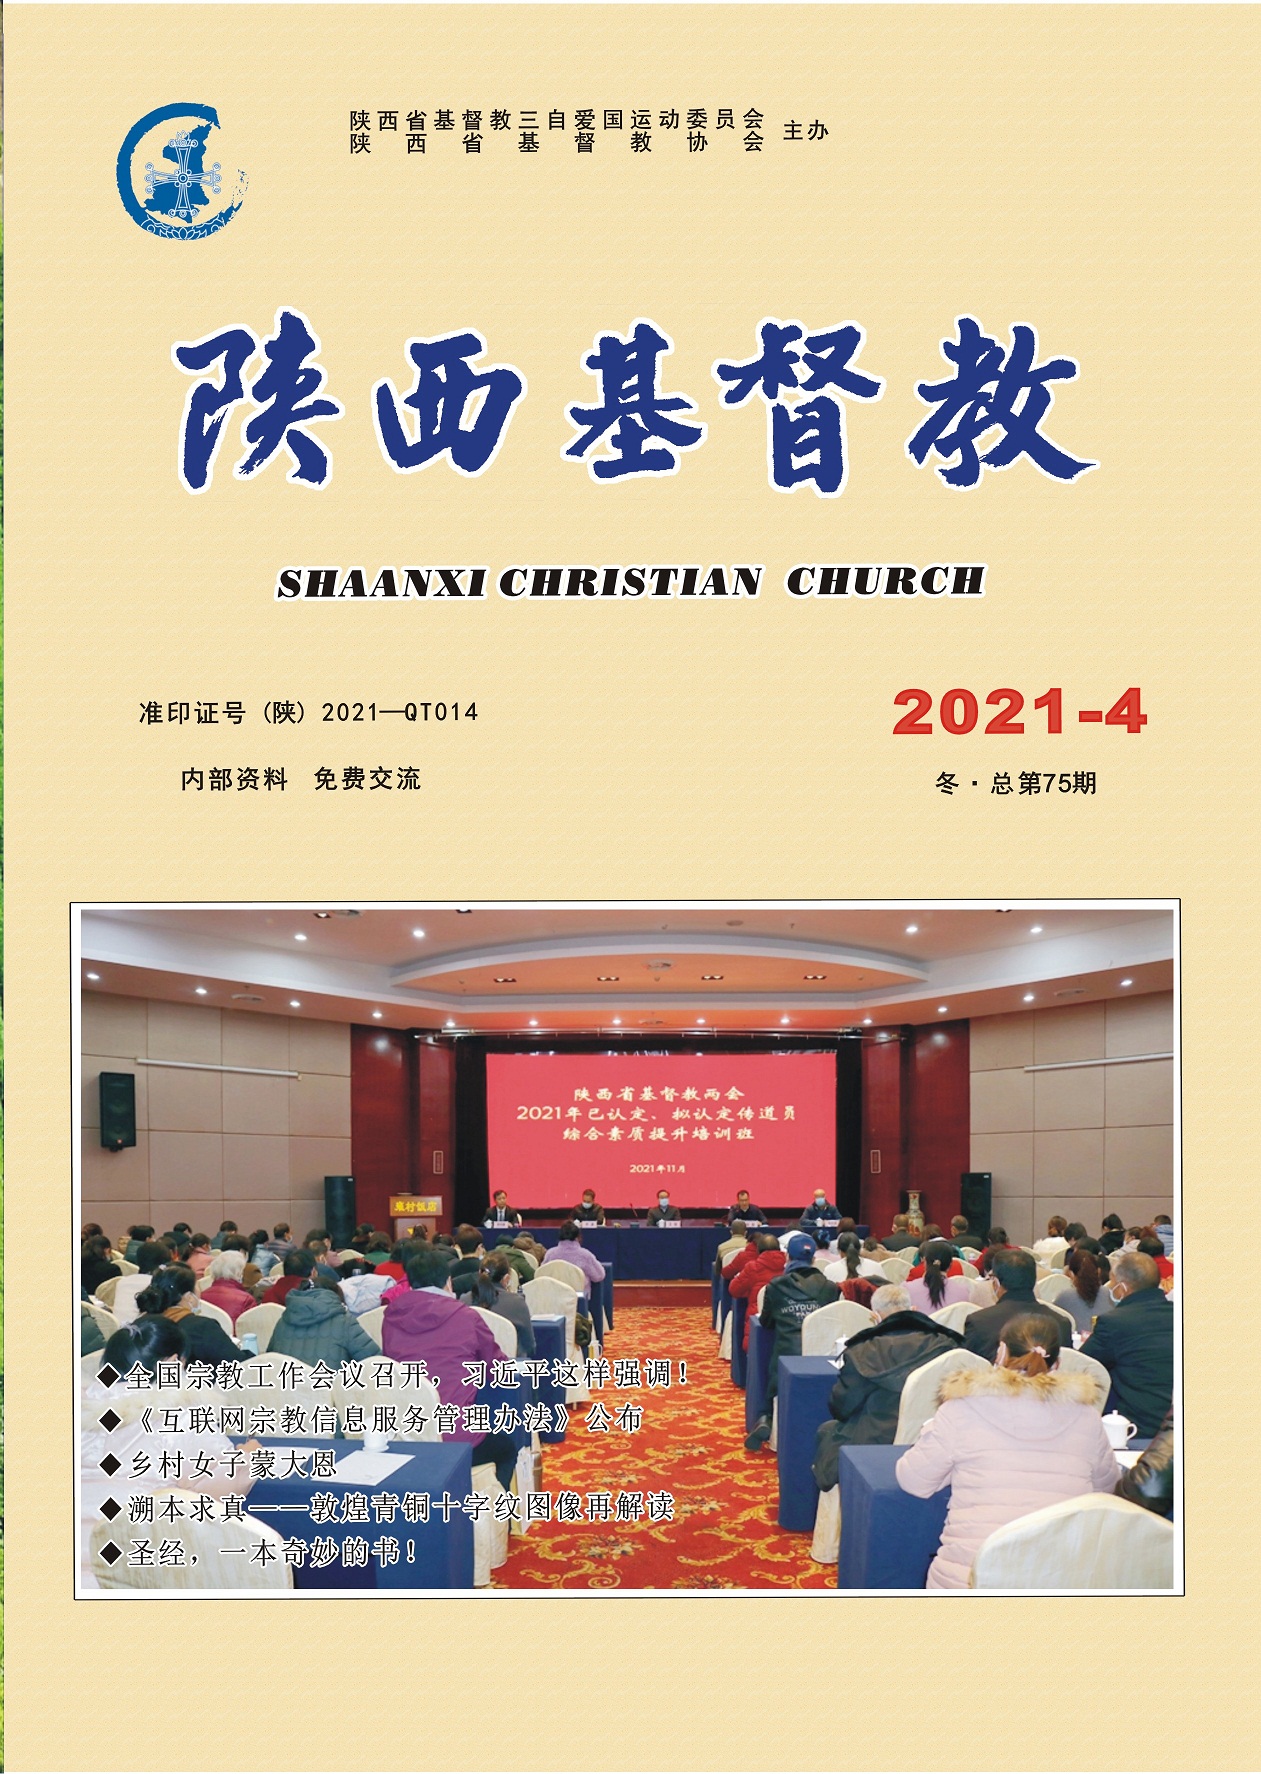 《陕西基督教》2021年第4期